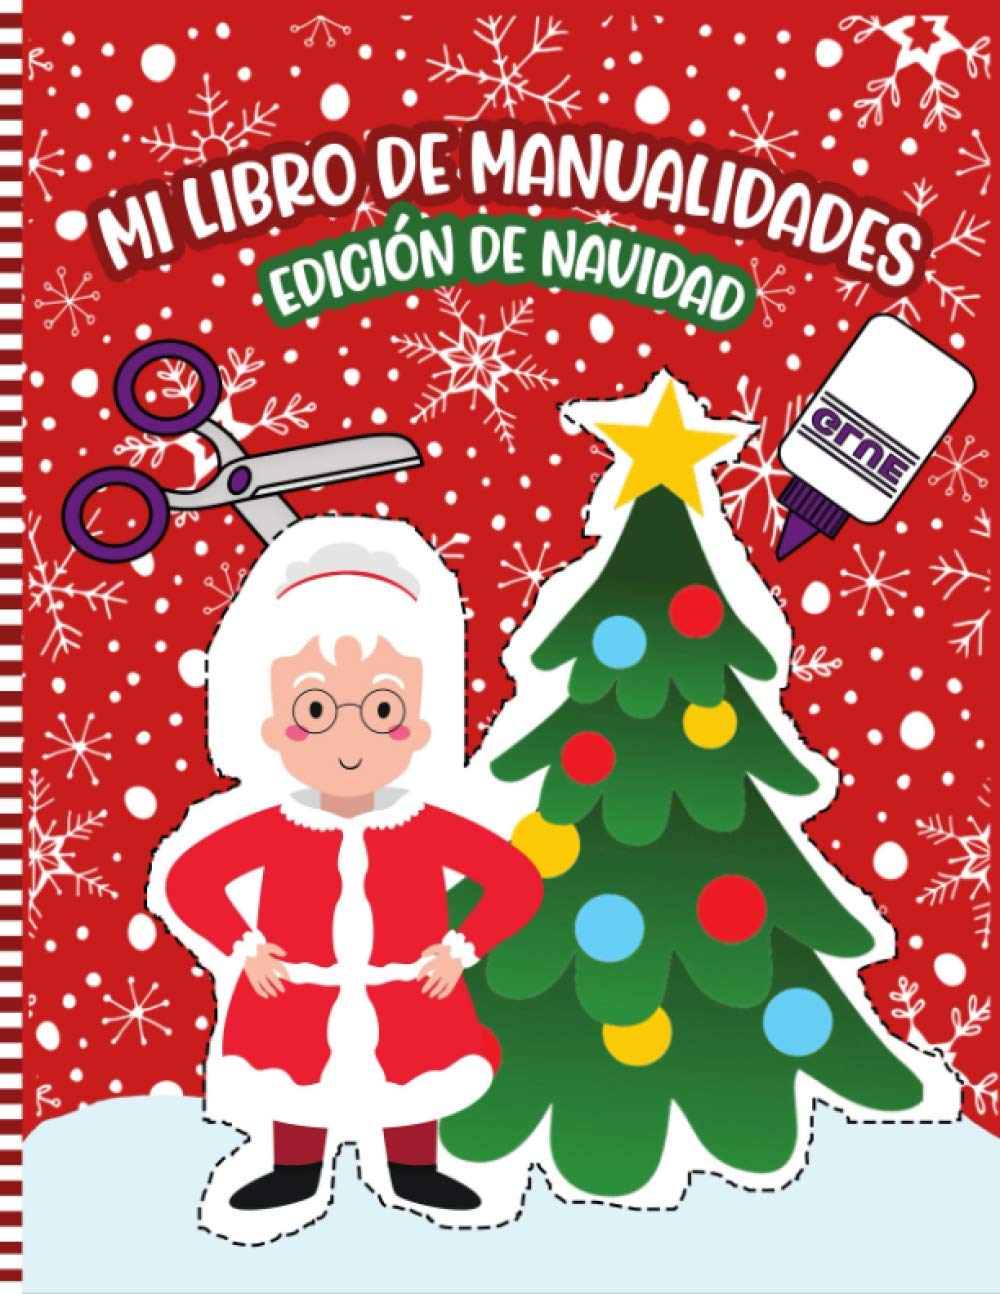 Libro: Mi libro de manualidades edición navidad por Ninarts Press